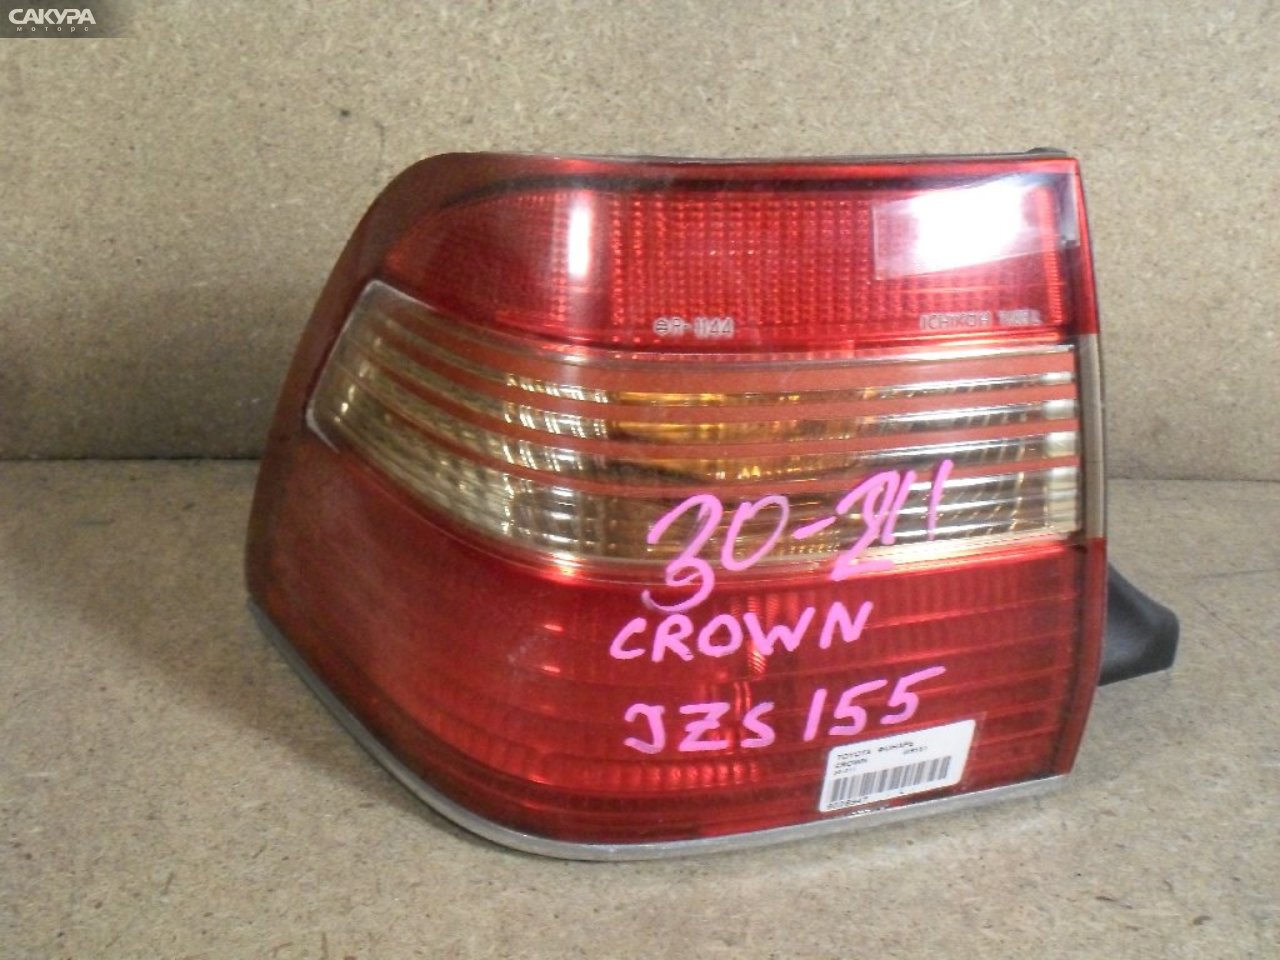 Фонарь стоп-сигнала левый Toyota Crown GS151 30-211: купить в Сакура Абакан.